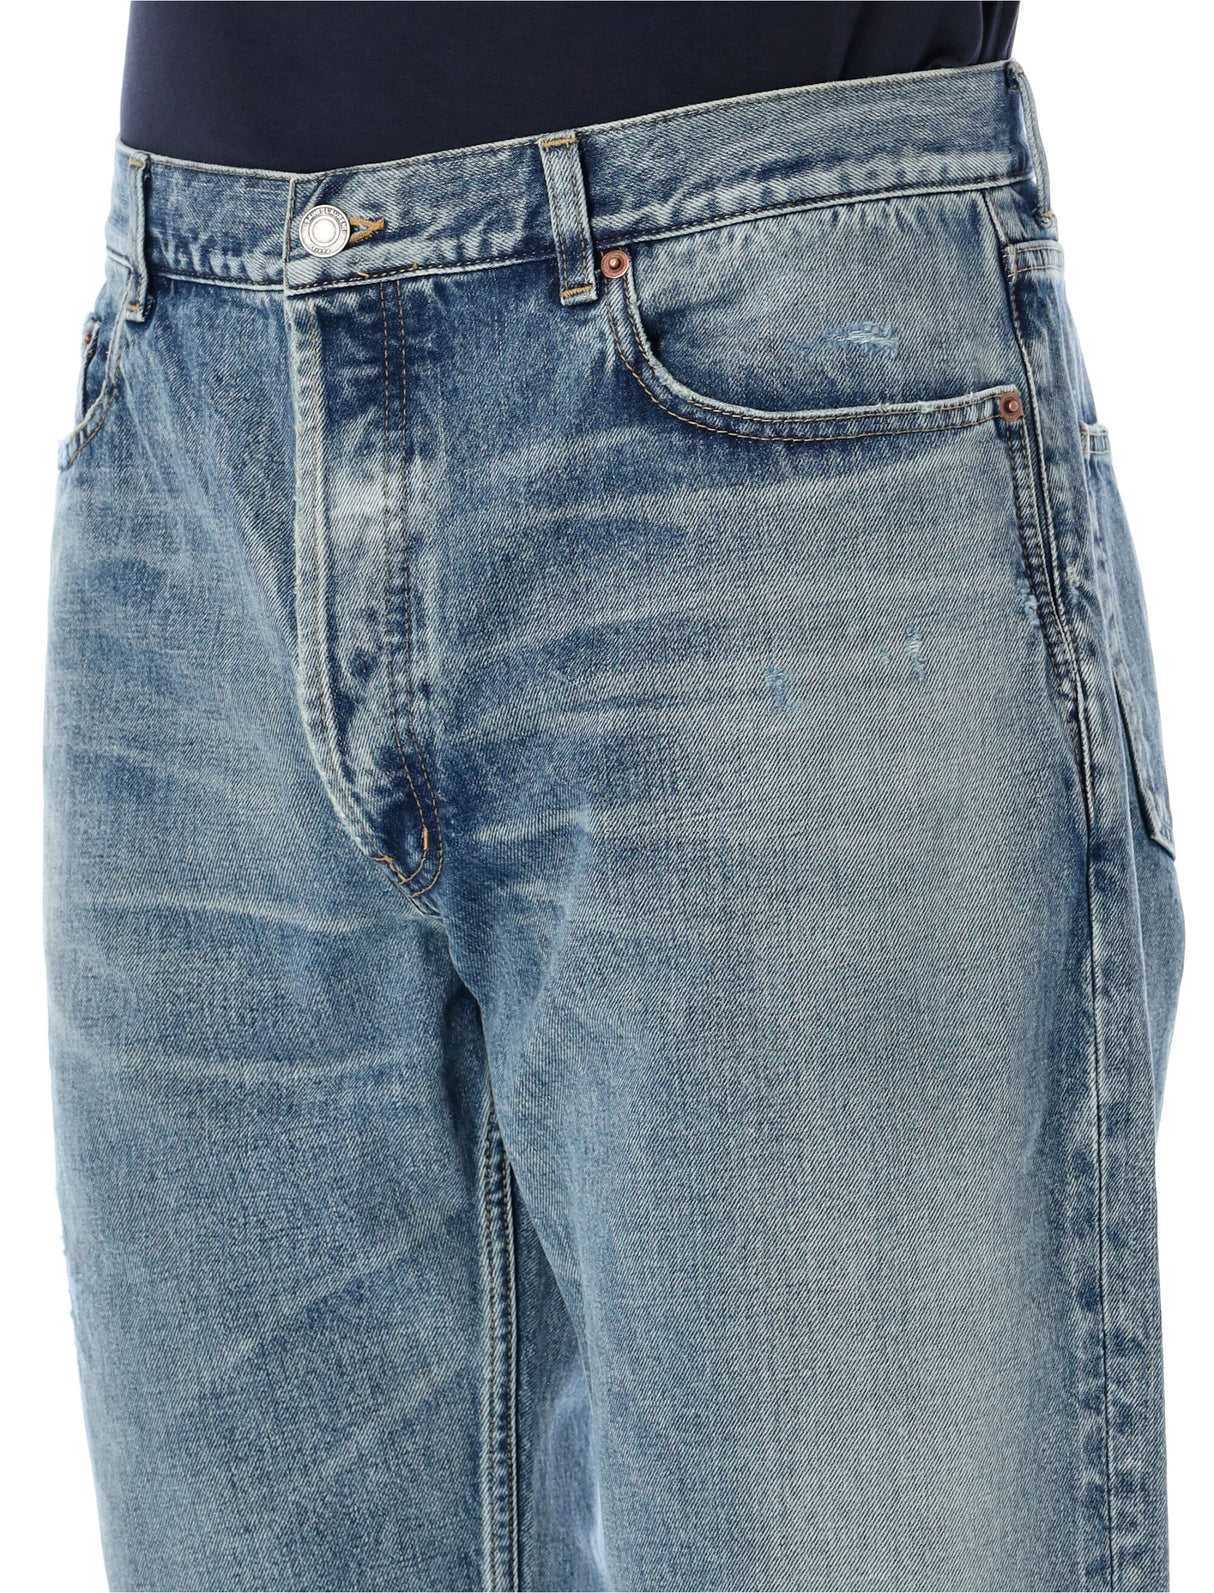 Quần jeans dài ống thẳng bằng cotton - Màu xanh Charlotte